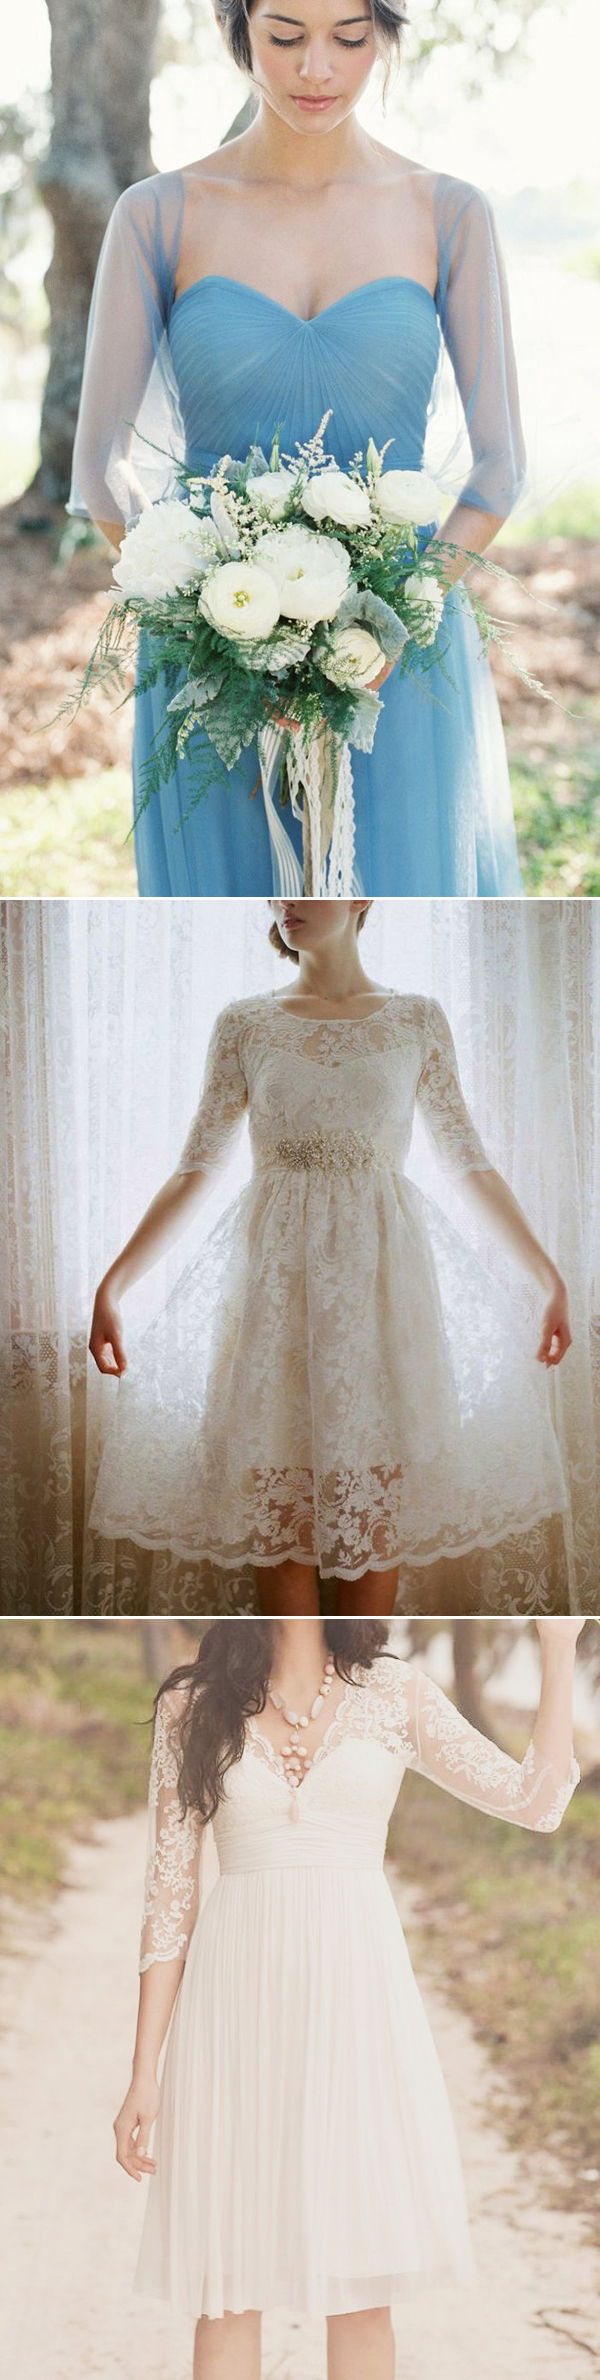 bridesmaid06-illusion-sleeves